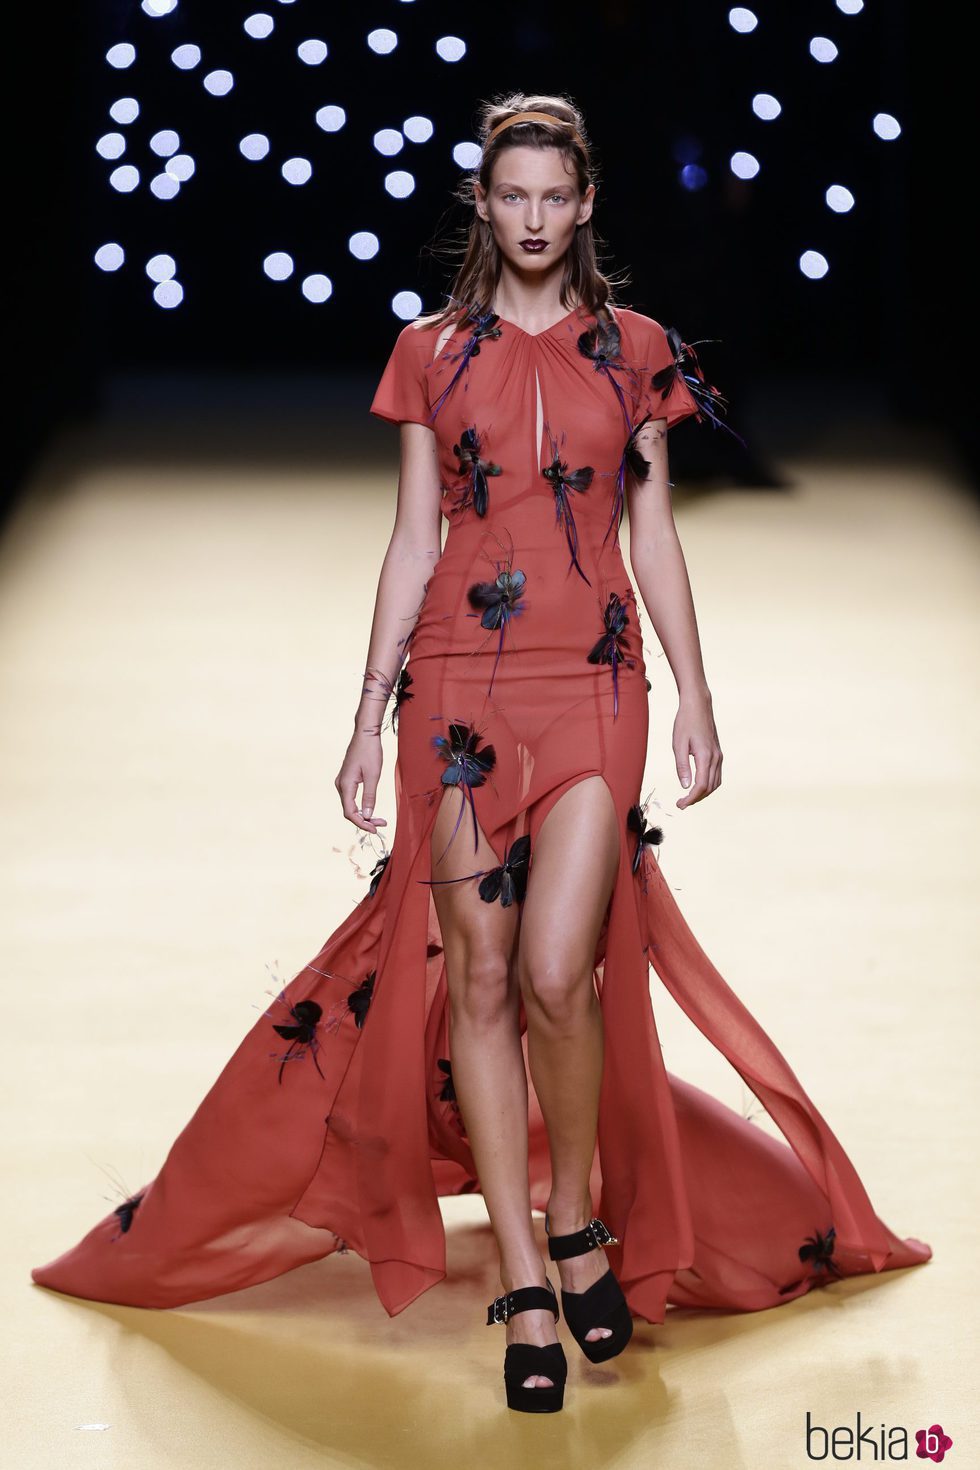 Vestido rojo de Juanjo Oliva primavera/verano 2017 en la Madrid Fashion Week